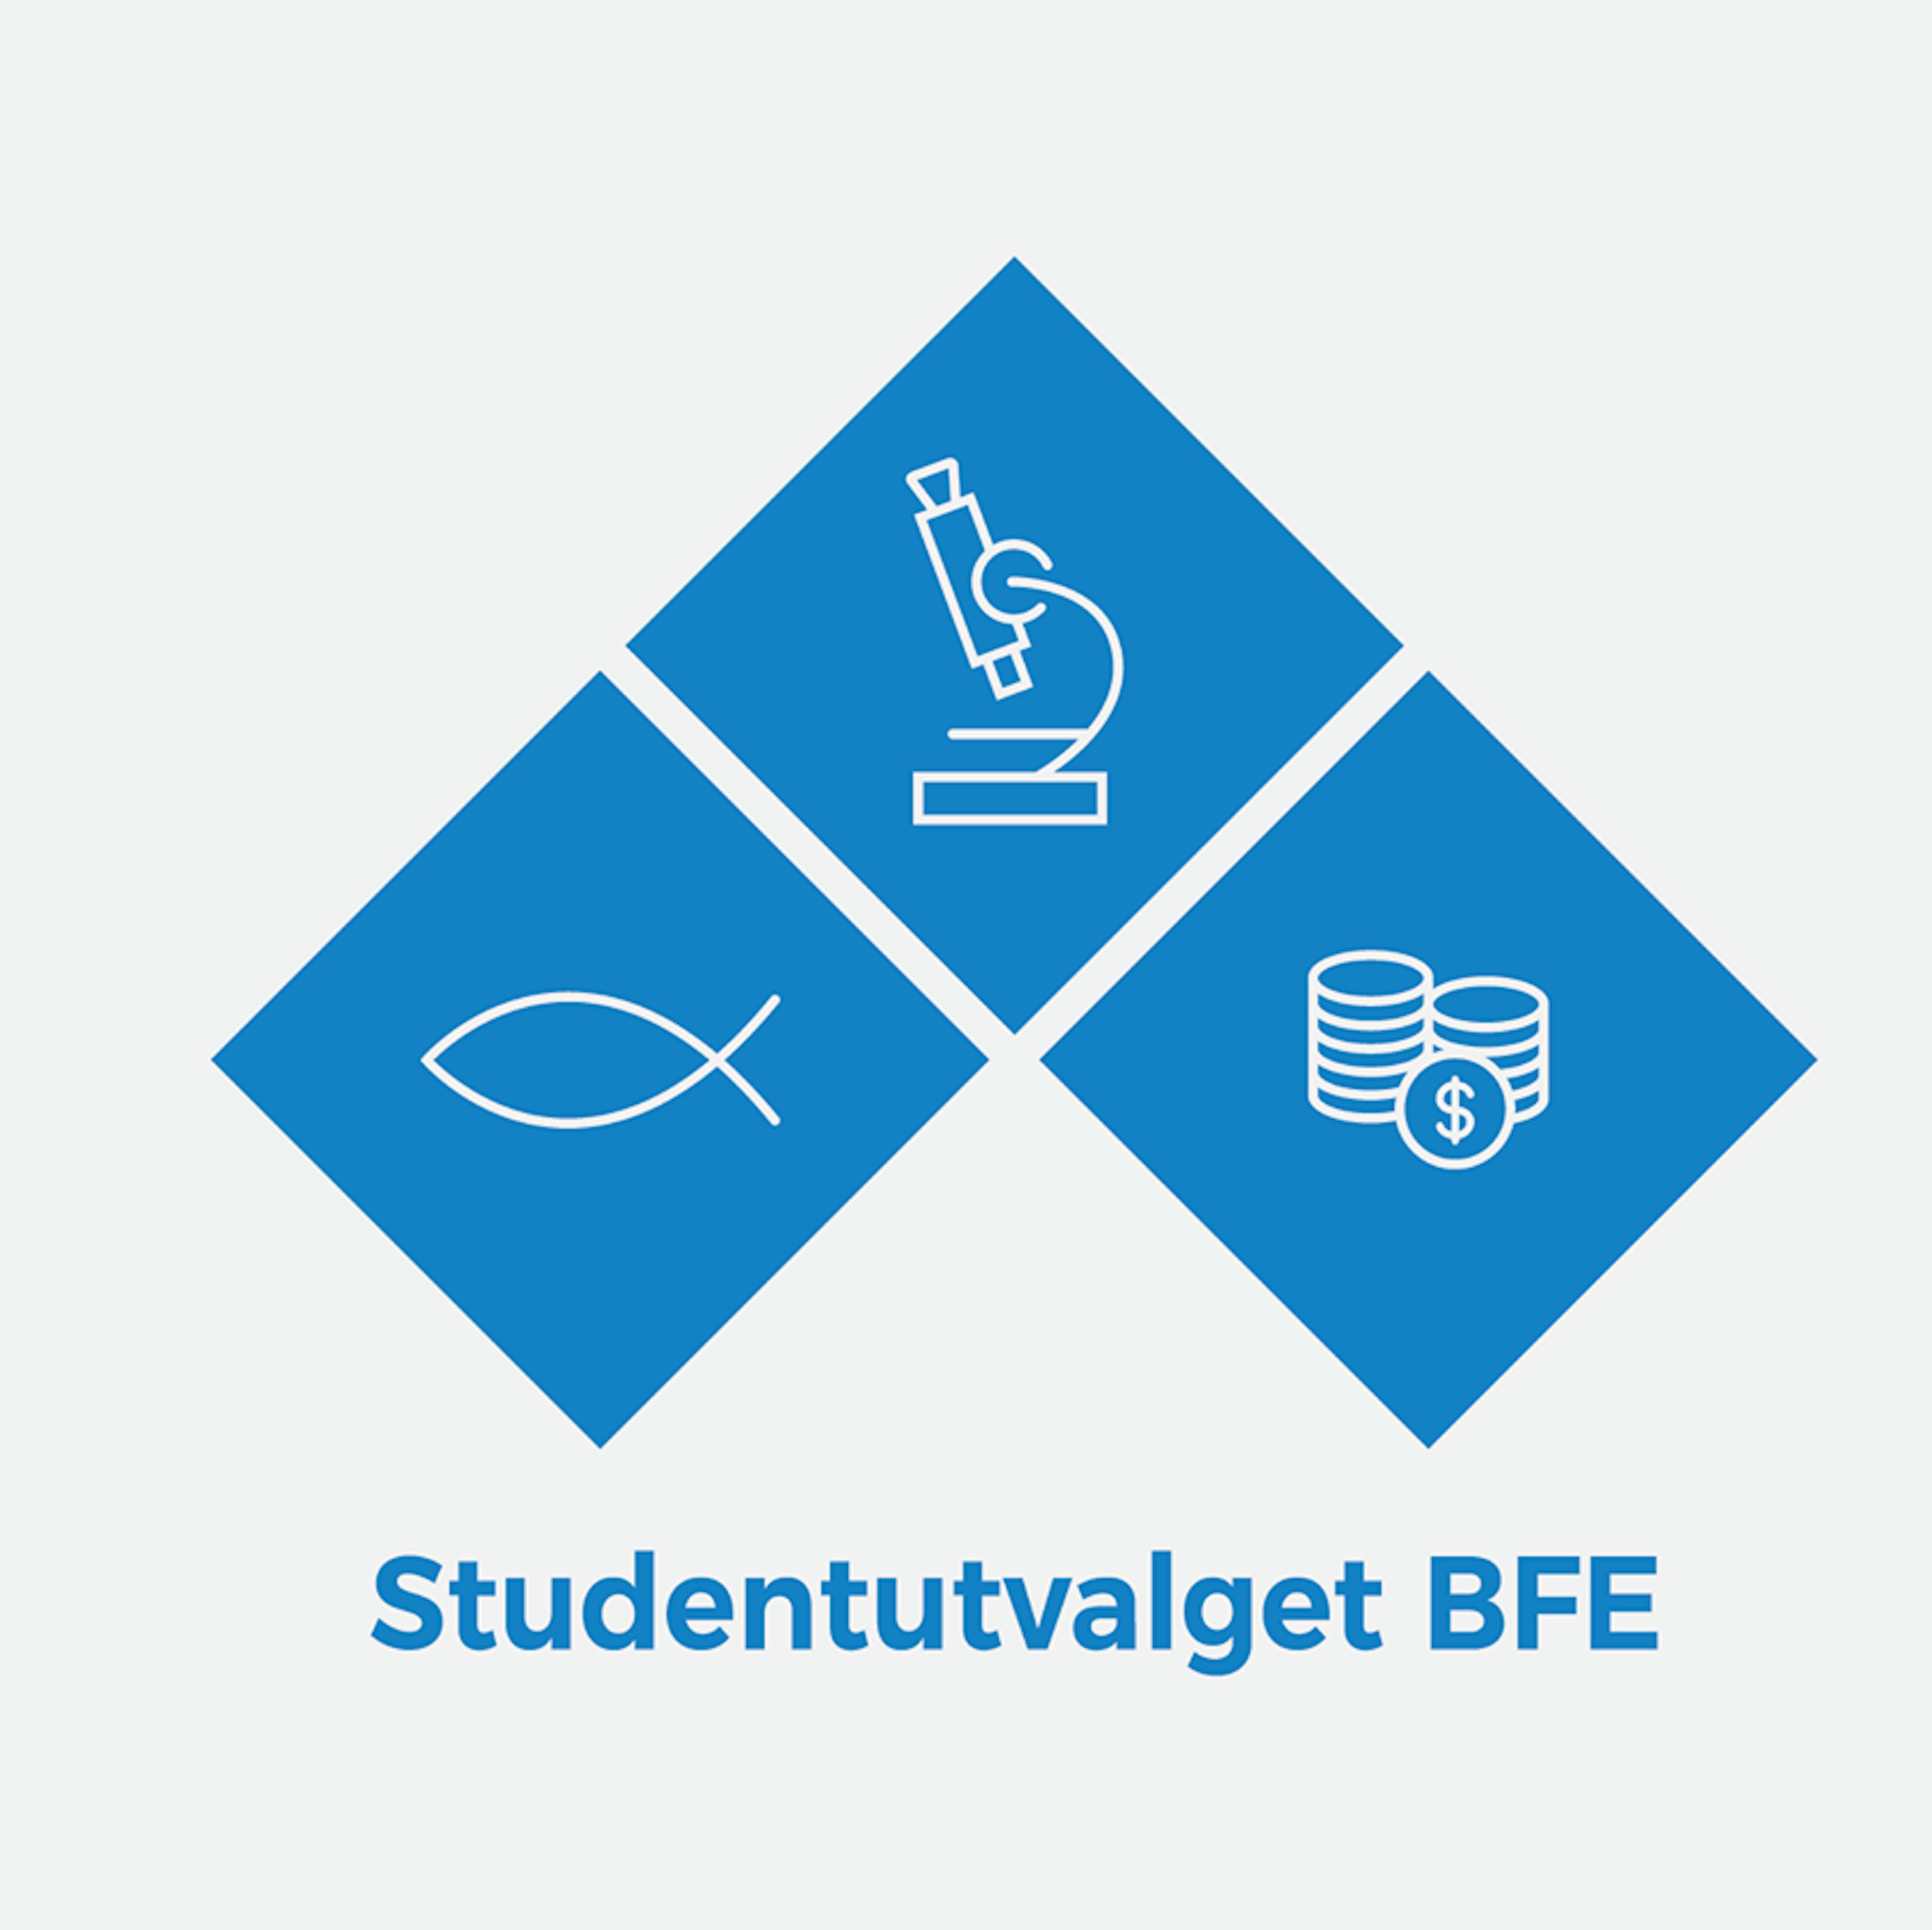 Studentutvalget BFE